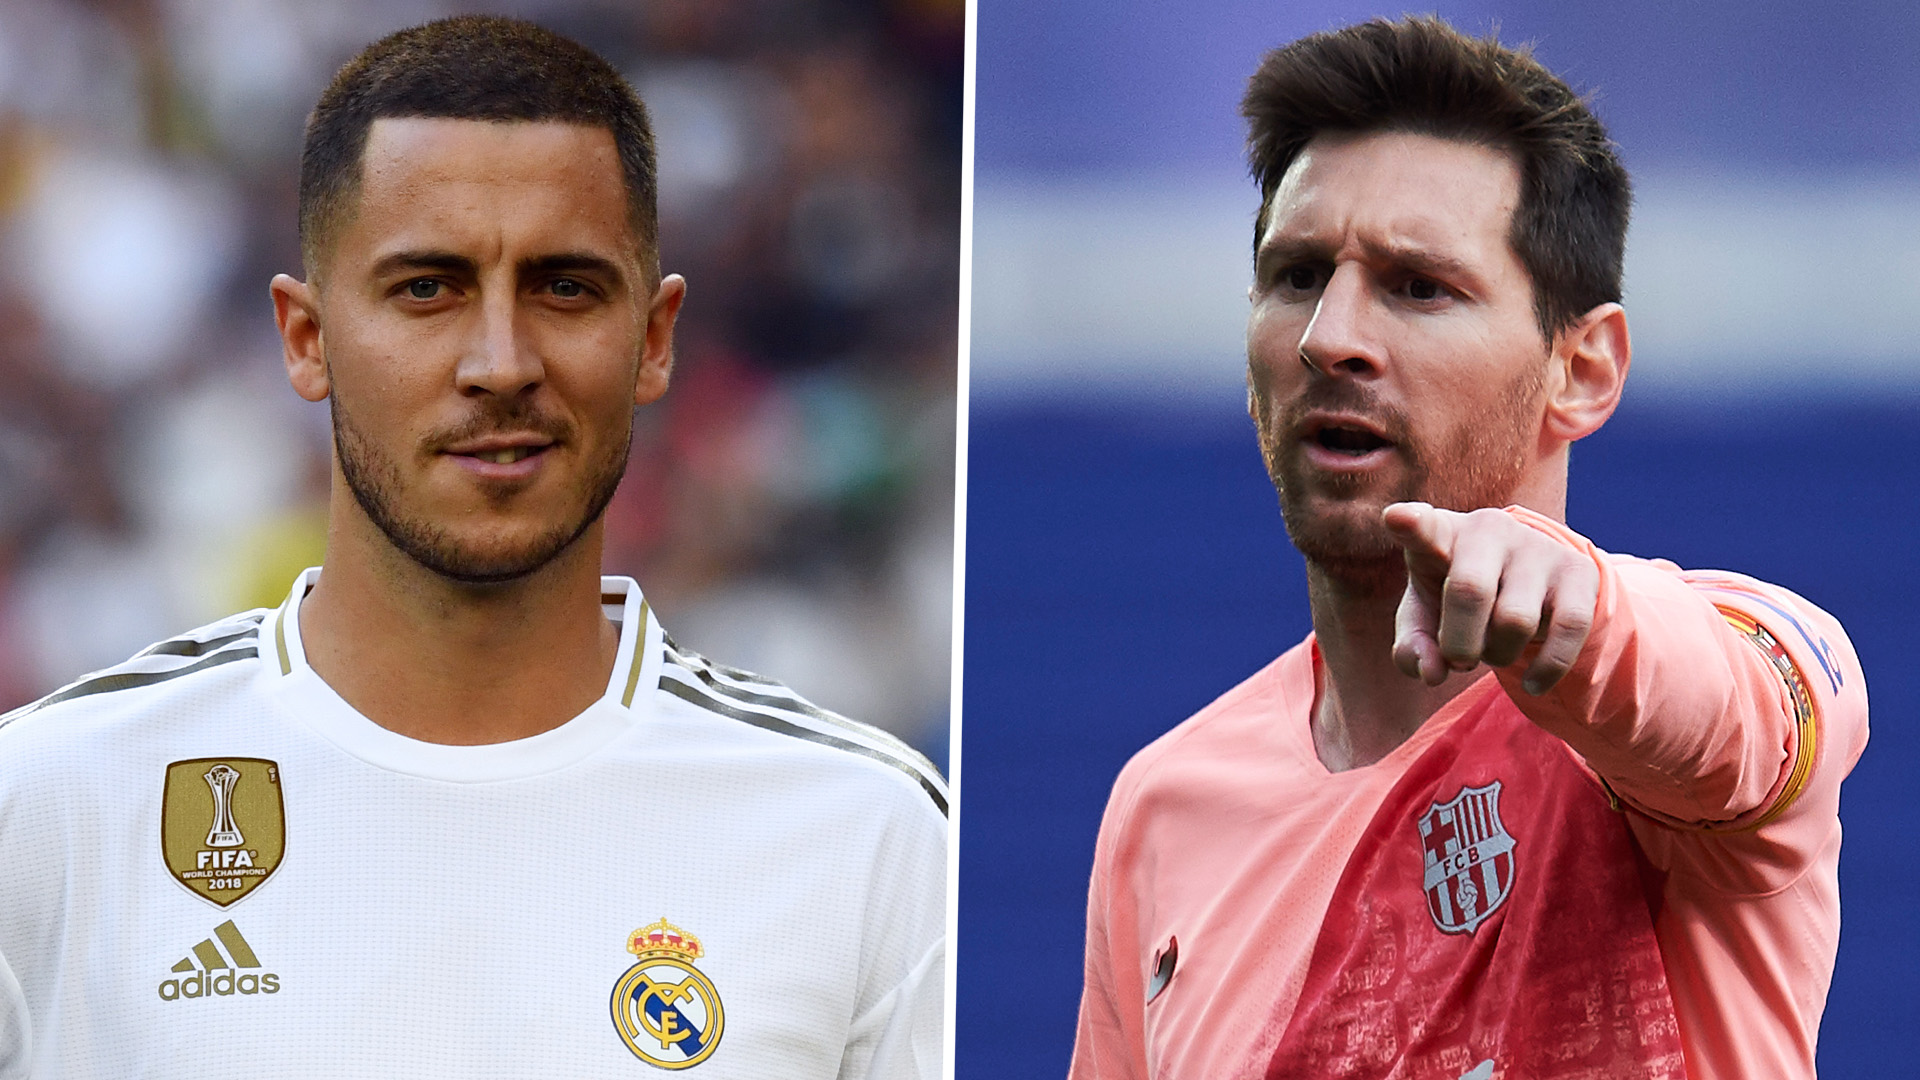 Un ancien international argentin fait une comparaison osée entre Messi et Hazard